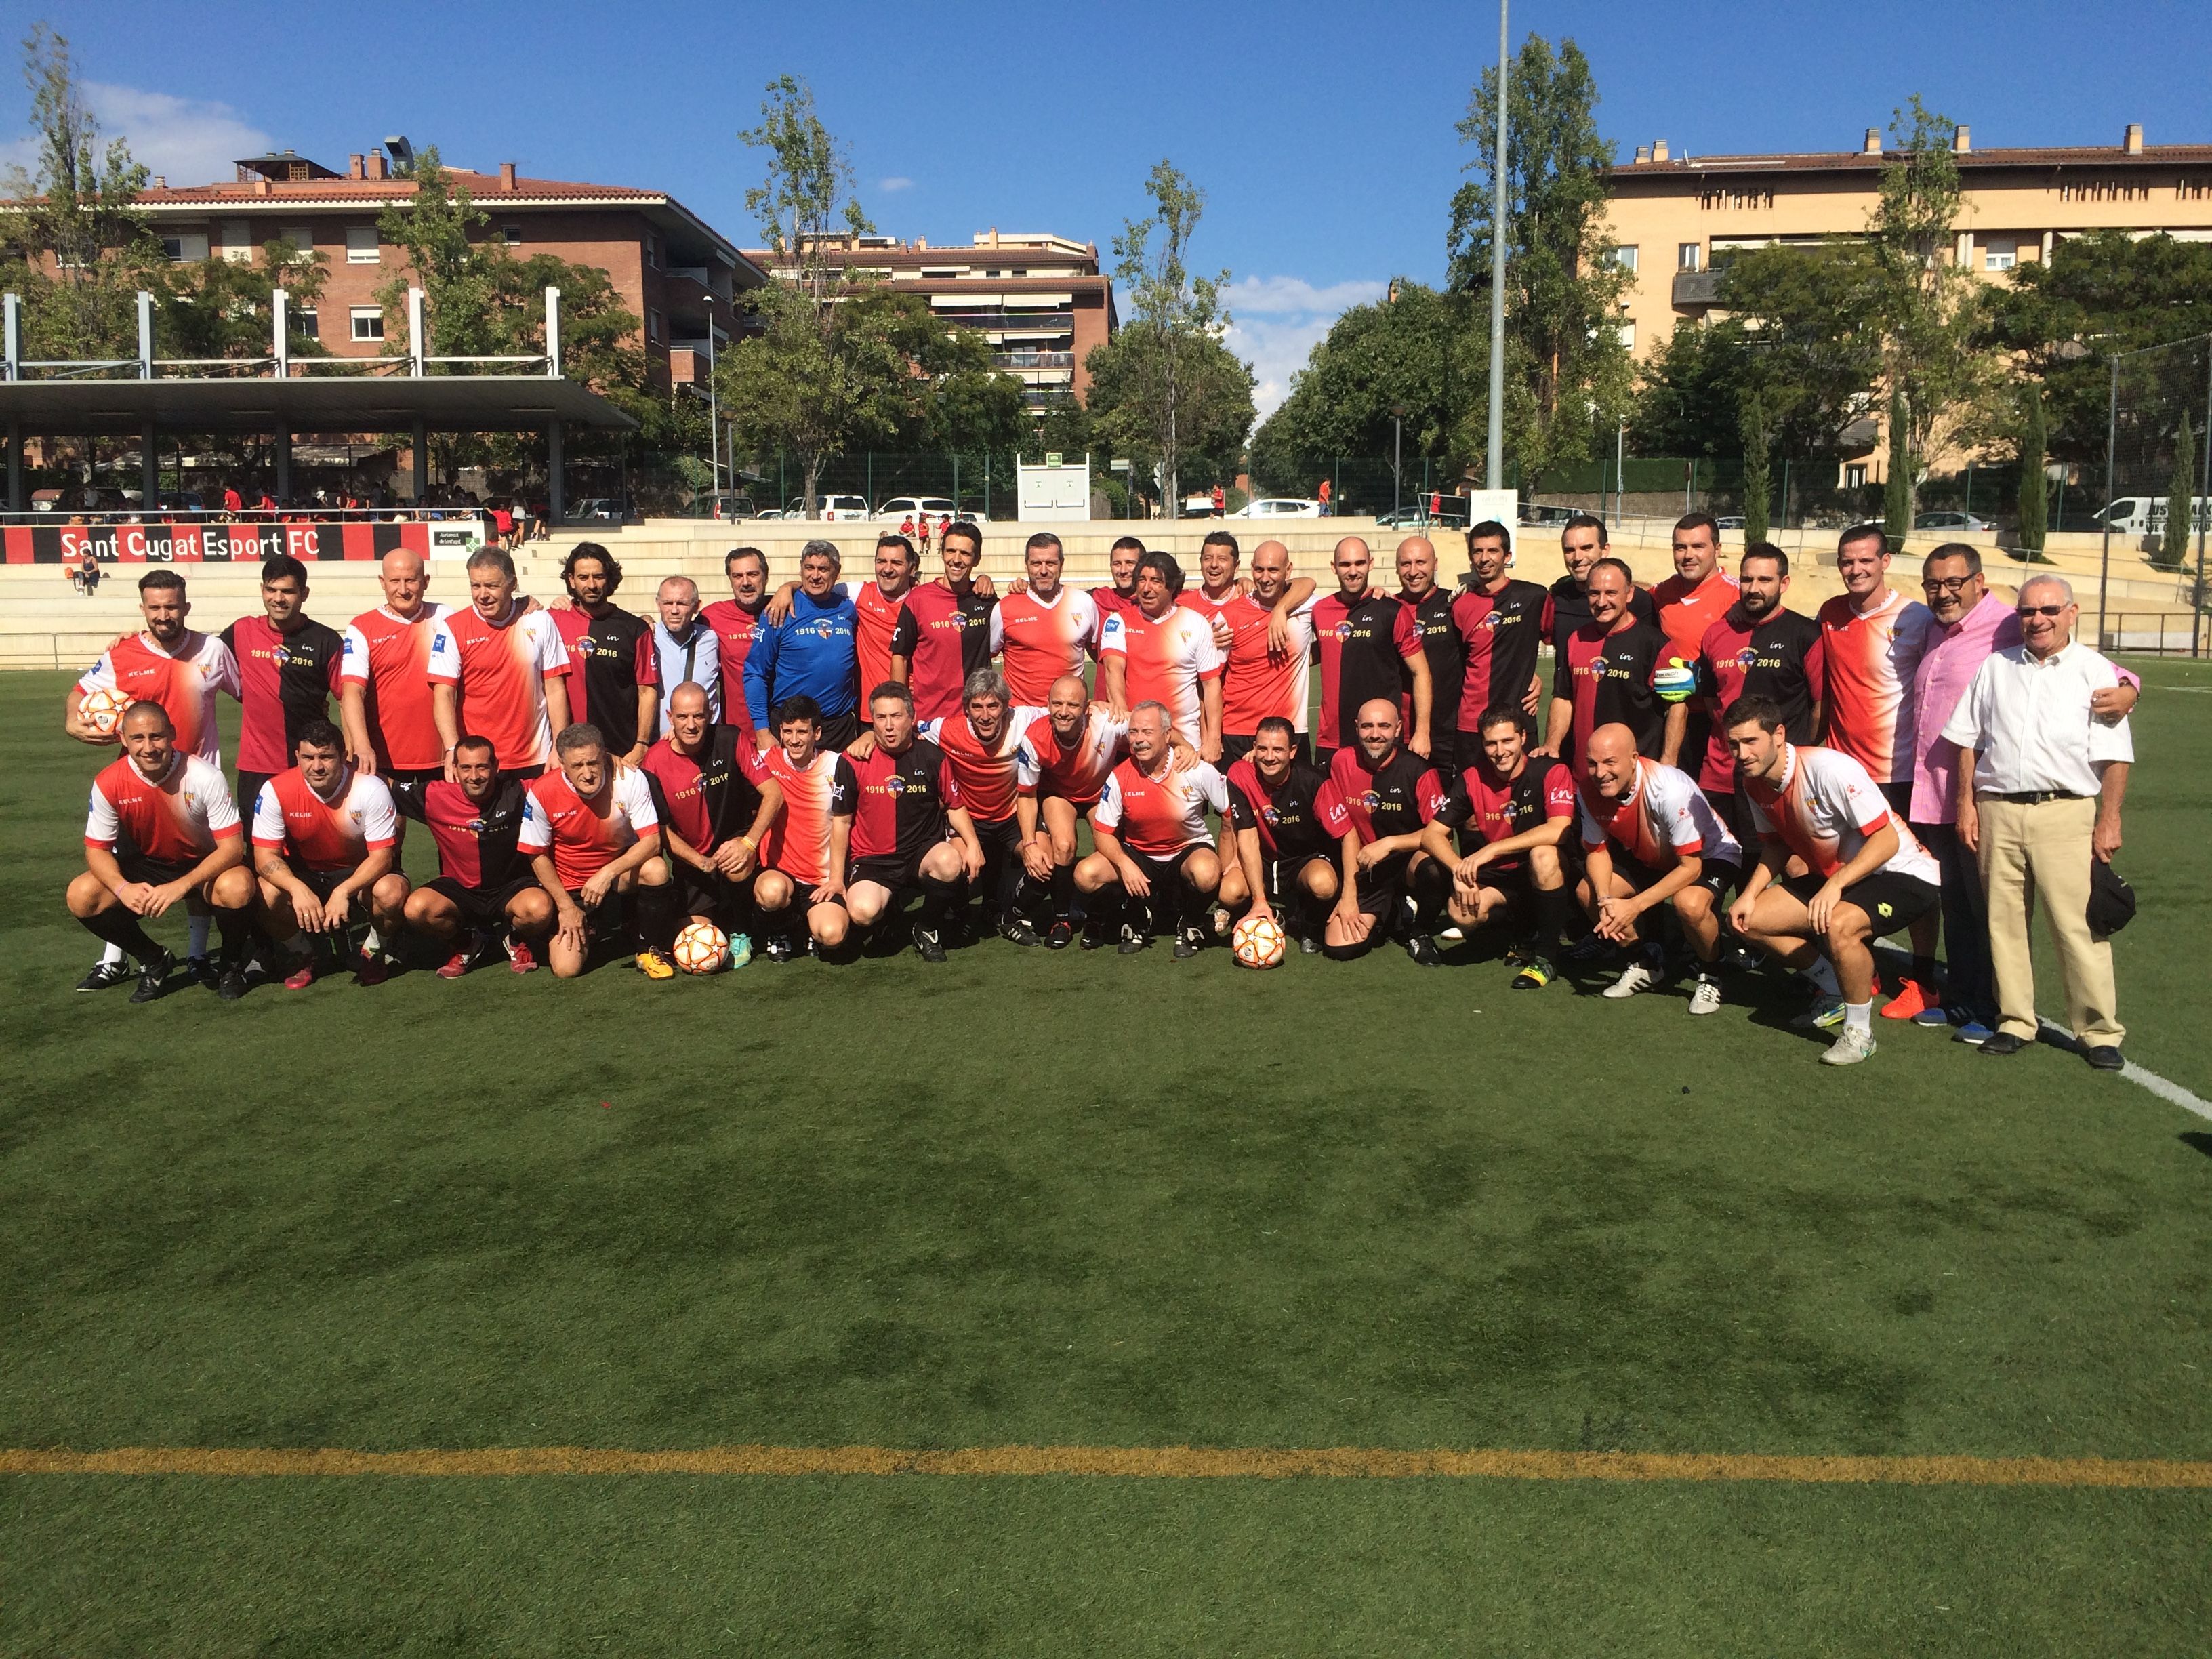 Els equips del Sant Cugat Esport FC i la UE Rubí han jugat un partit de veterans que ha acabat amb empat a 1 gol. FOTO: Àlex López Puig